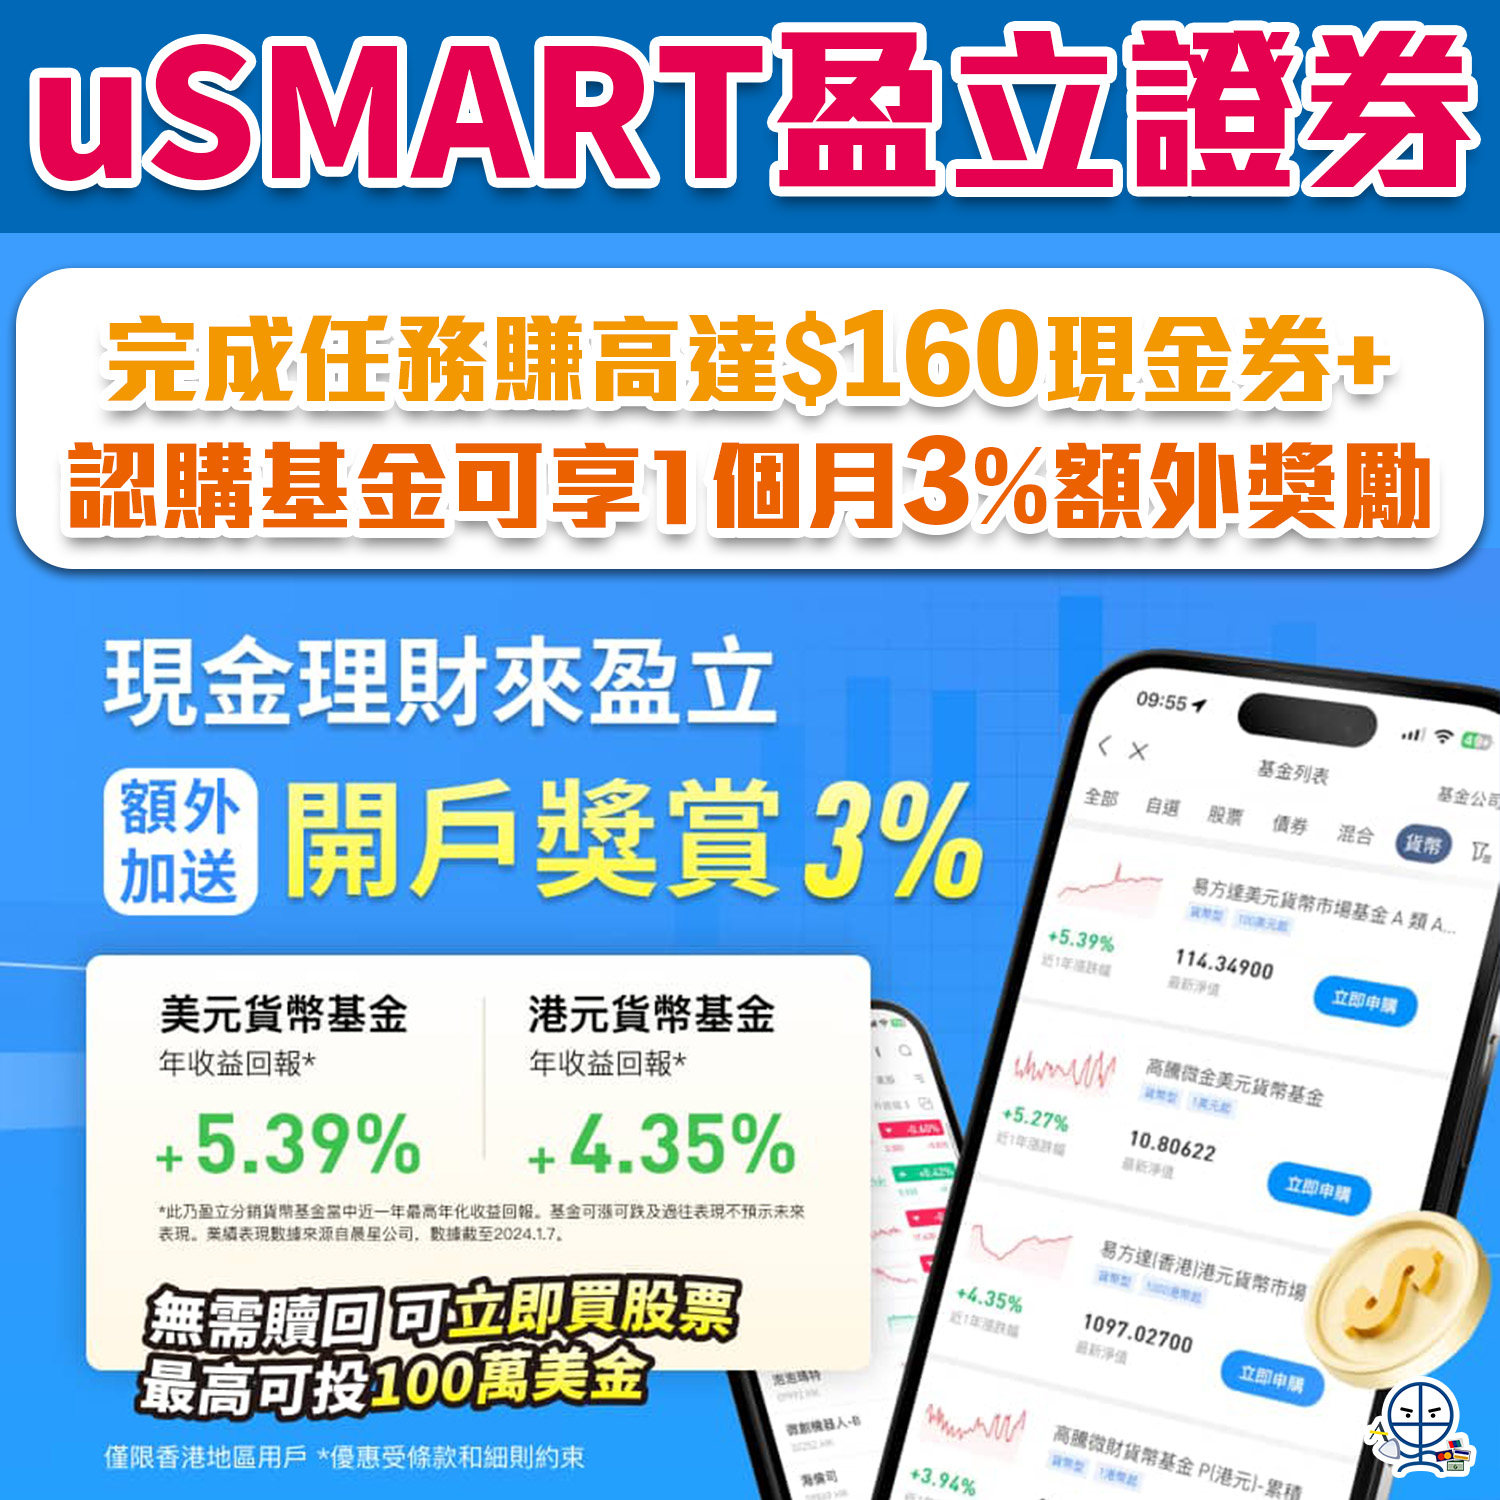 【uSMART盈立證券開戶優惠】賺高達HK$160現金券！認購基金可享3%額外獎勵金額！